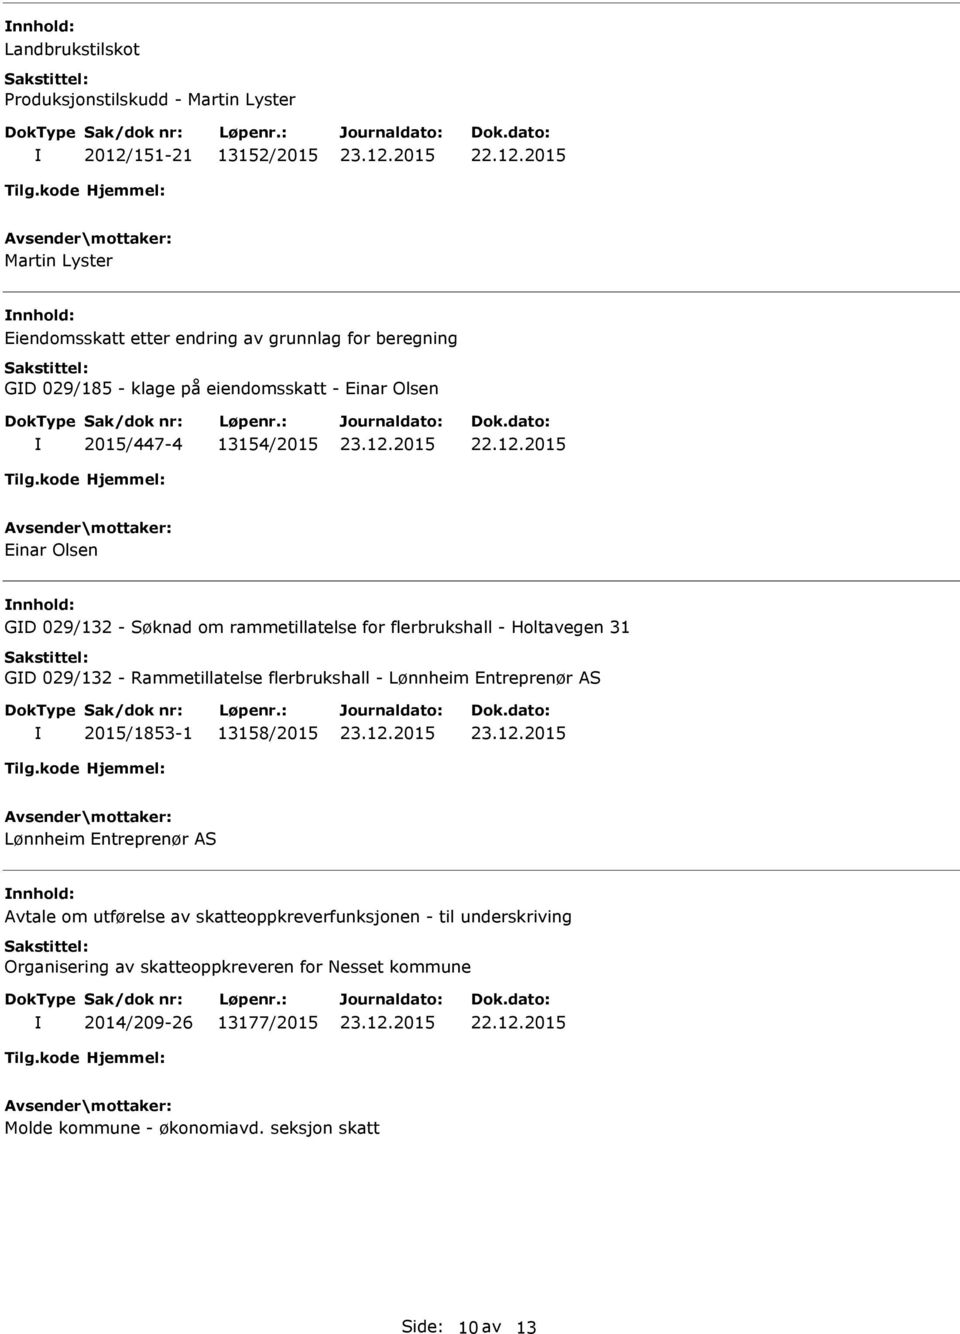 GD 029/132 - Rammetillatelse flerbrukshall - Lønnheim Entreprenør AS 2015/1853-1 13158/2015 Lønnheim Entreprenør AS nnhold: Avtale om utførelse av